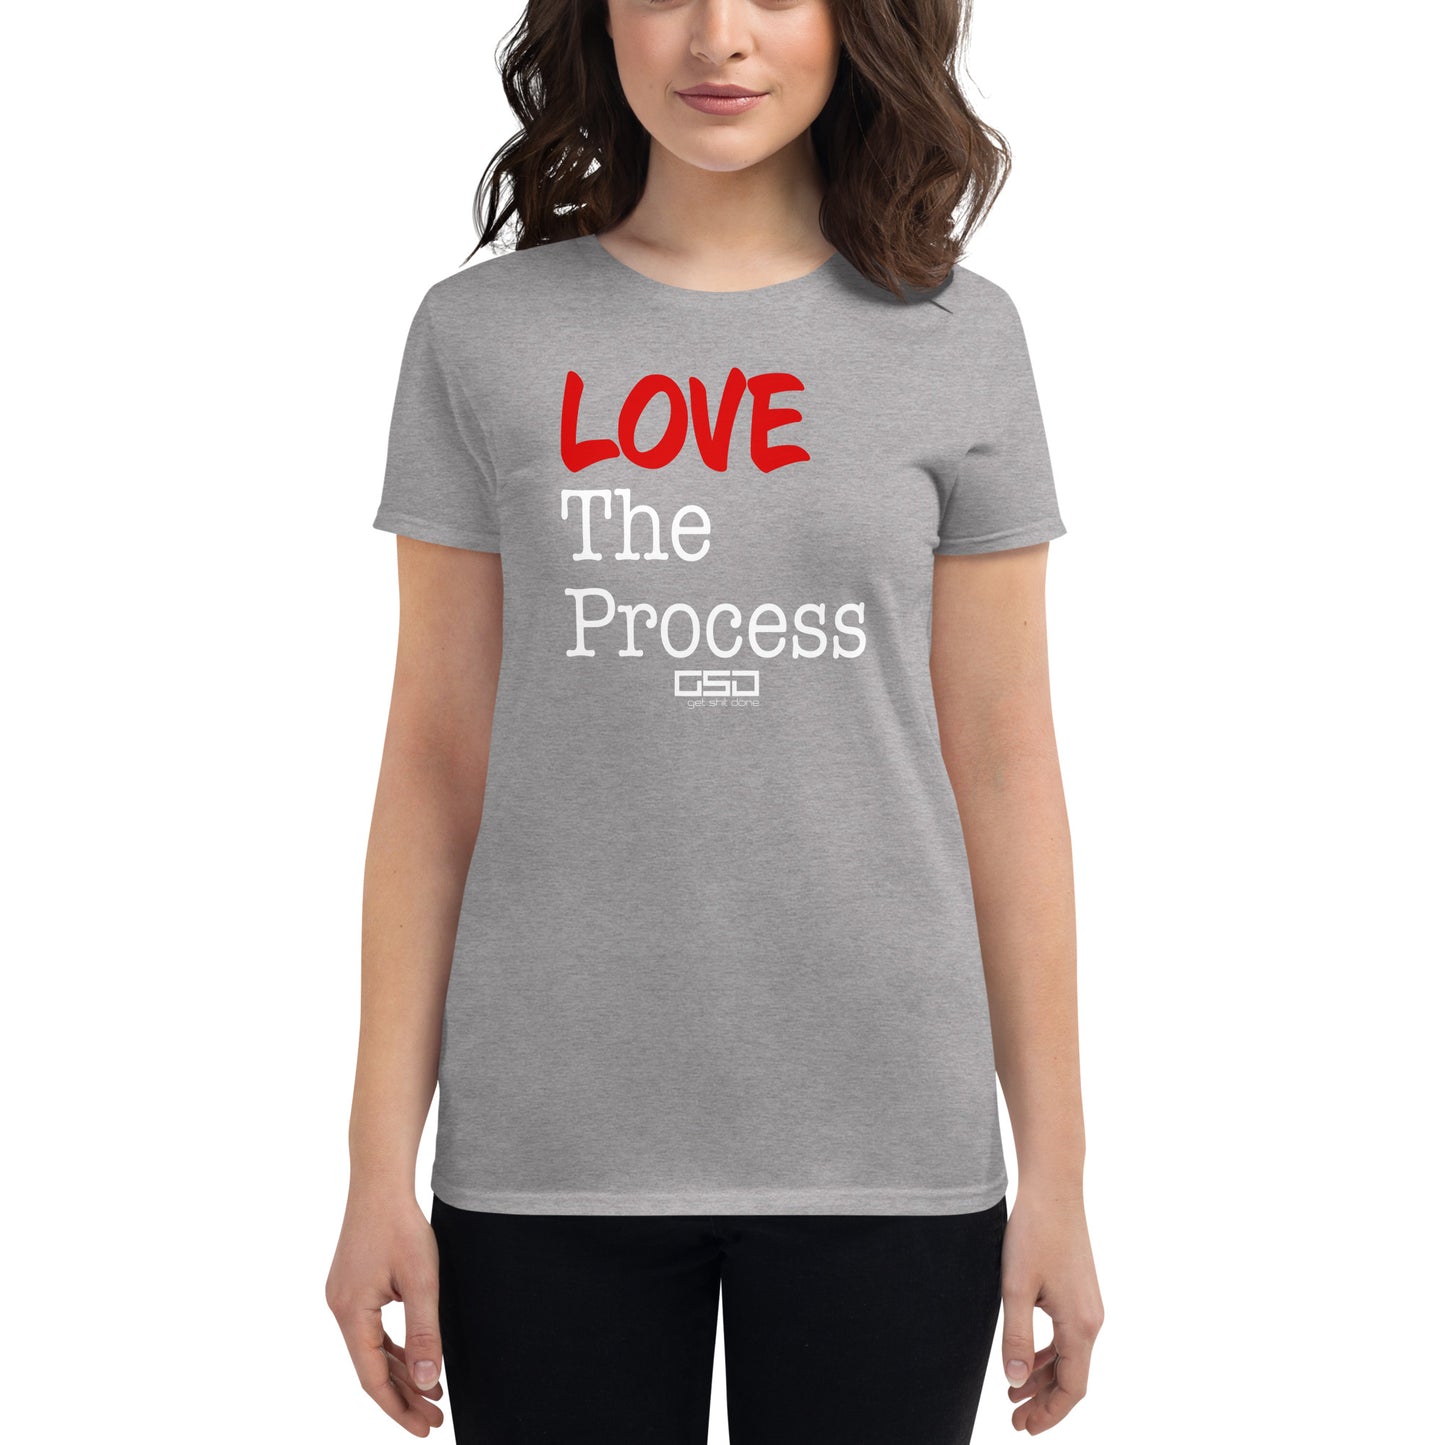 Love The Process-Women's short sleeve t-shirt